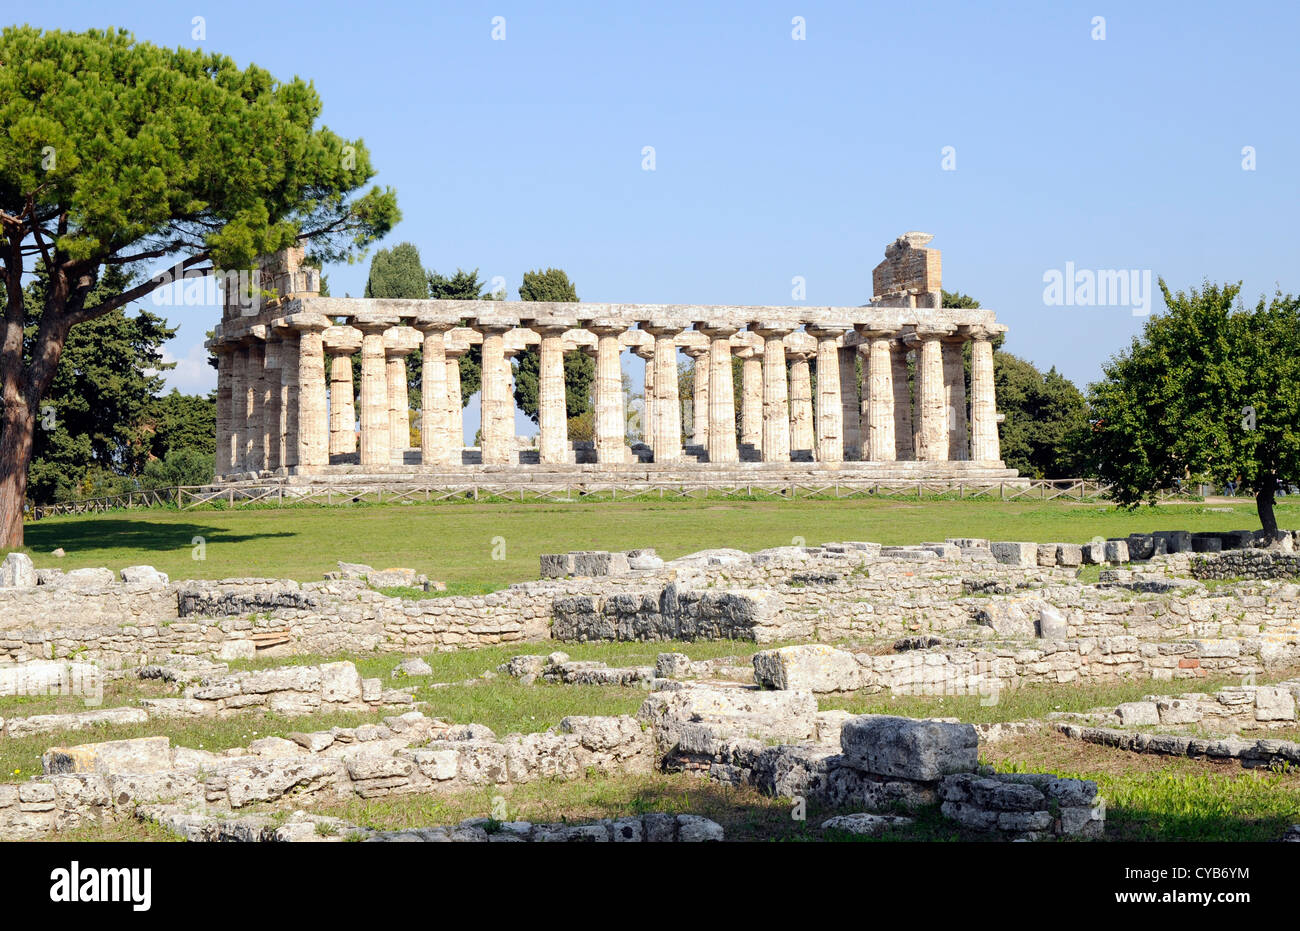 El Templo de Atenea (también conocido como templo de Ceres), finales del siglo VI A.C. Restos romanos en primer plano. Paestum, al sur de Nápoles. Foto de stock